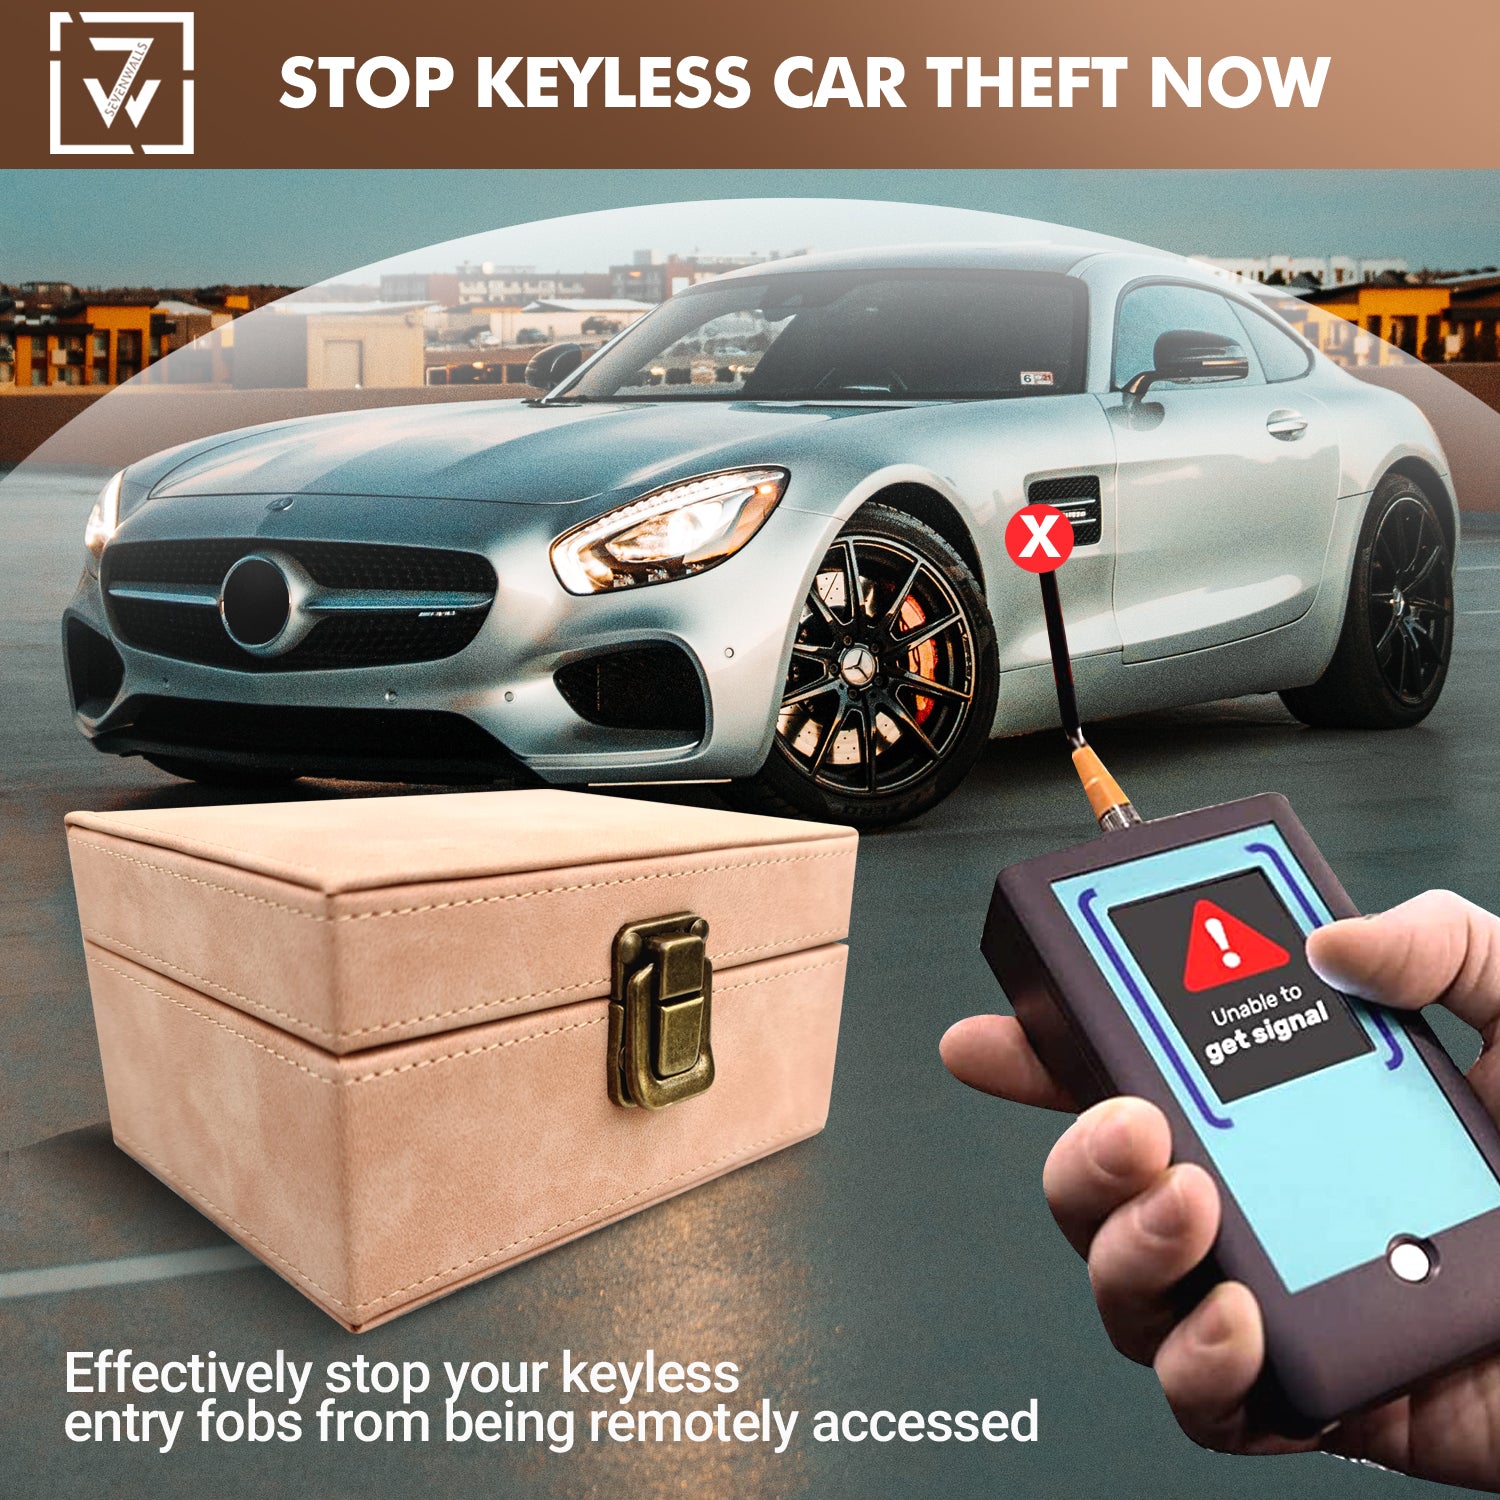 Car Key Security Faraday Box - Defend Against Digital Car Theft